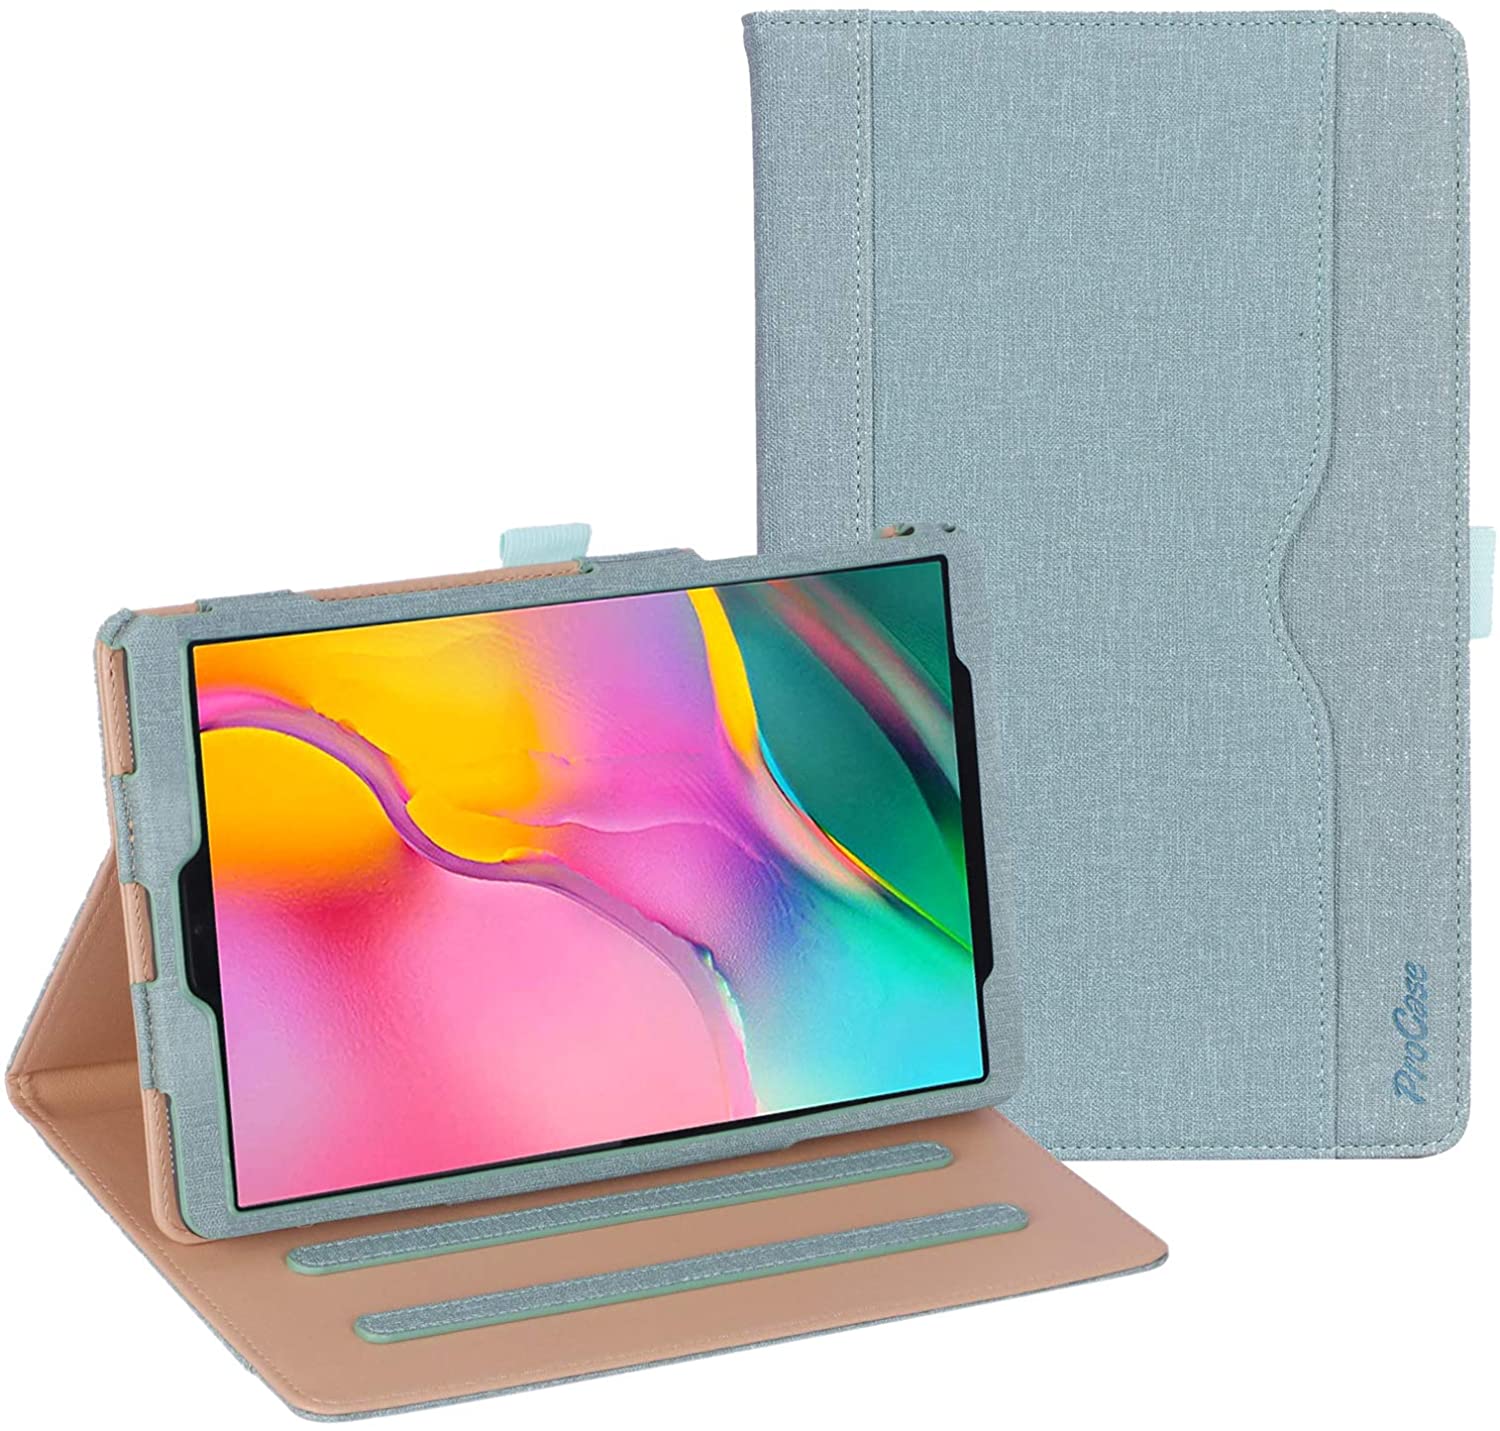 Galaxy Tab A 10.1 2019 T510 Leather Folio Case | ProCase teal